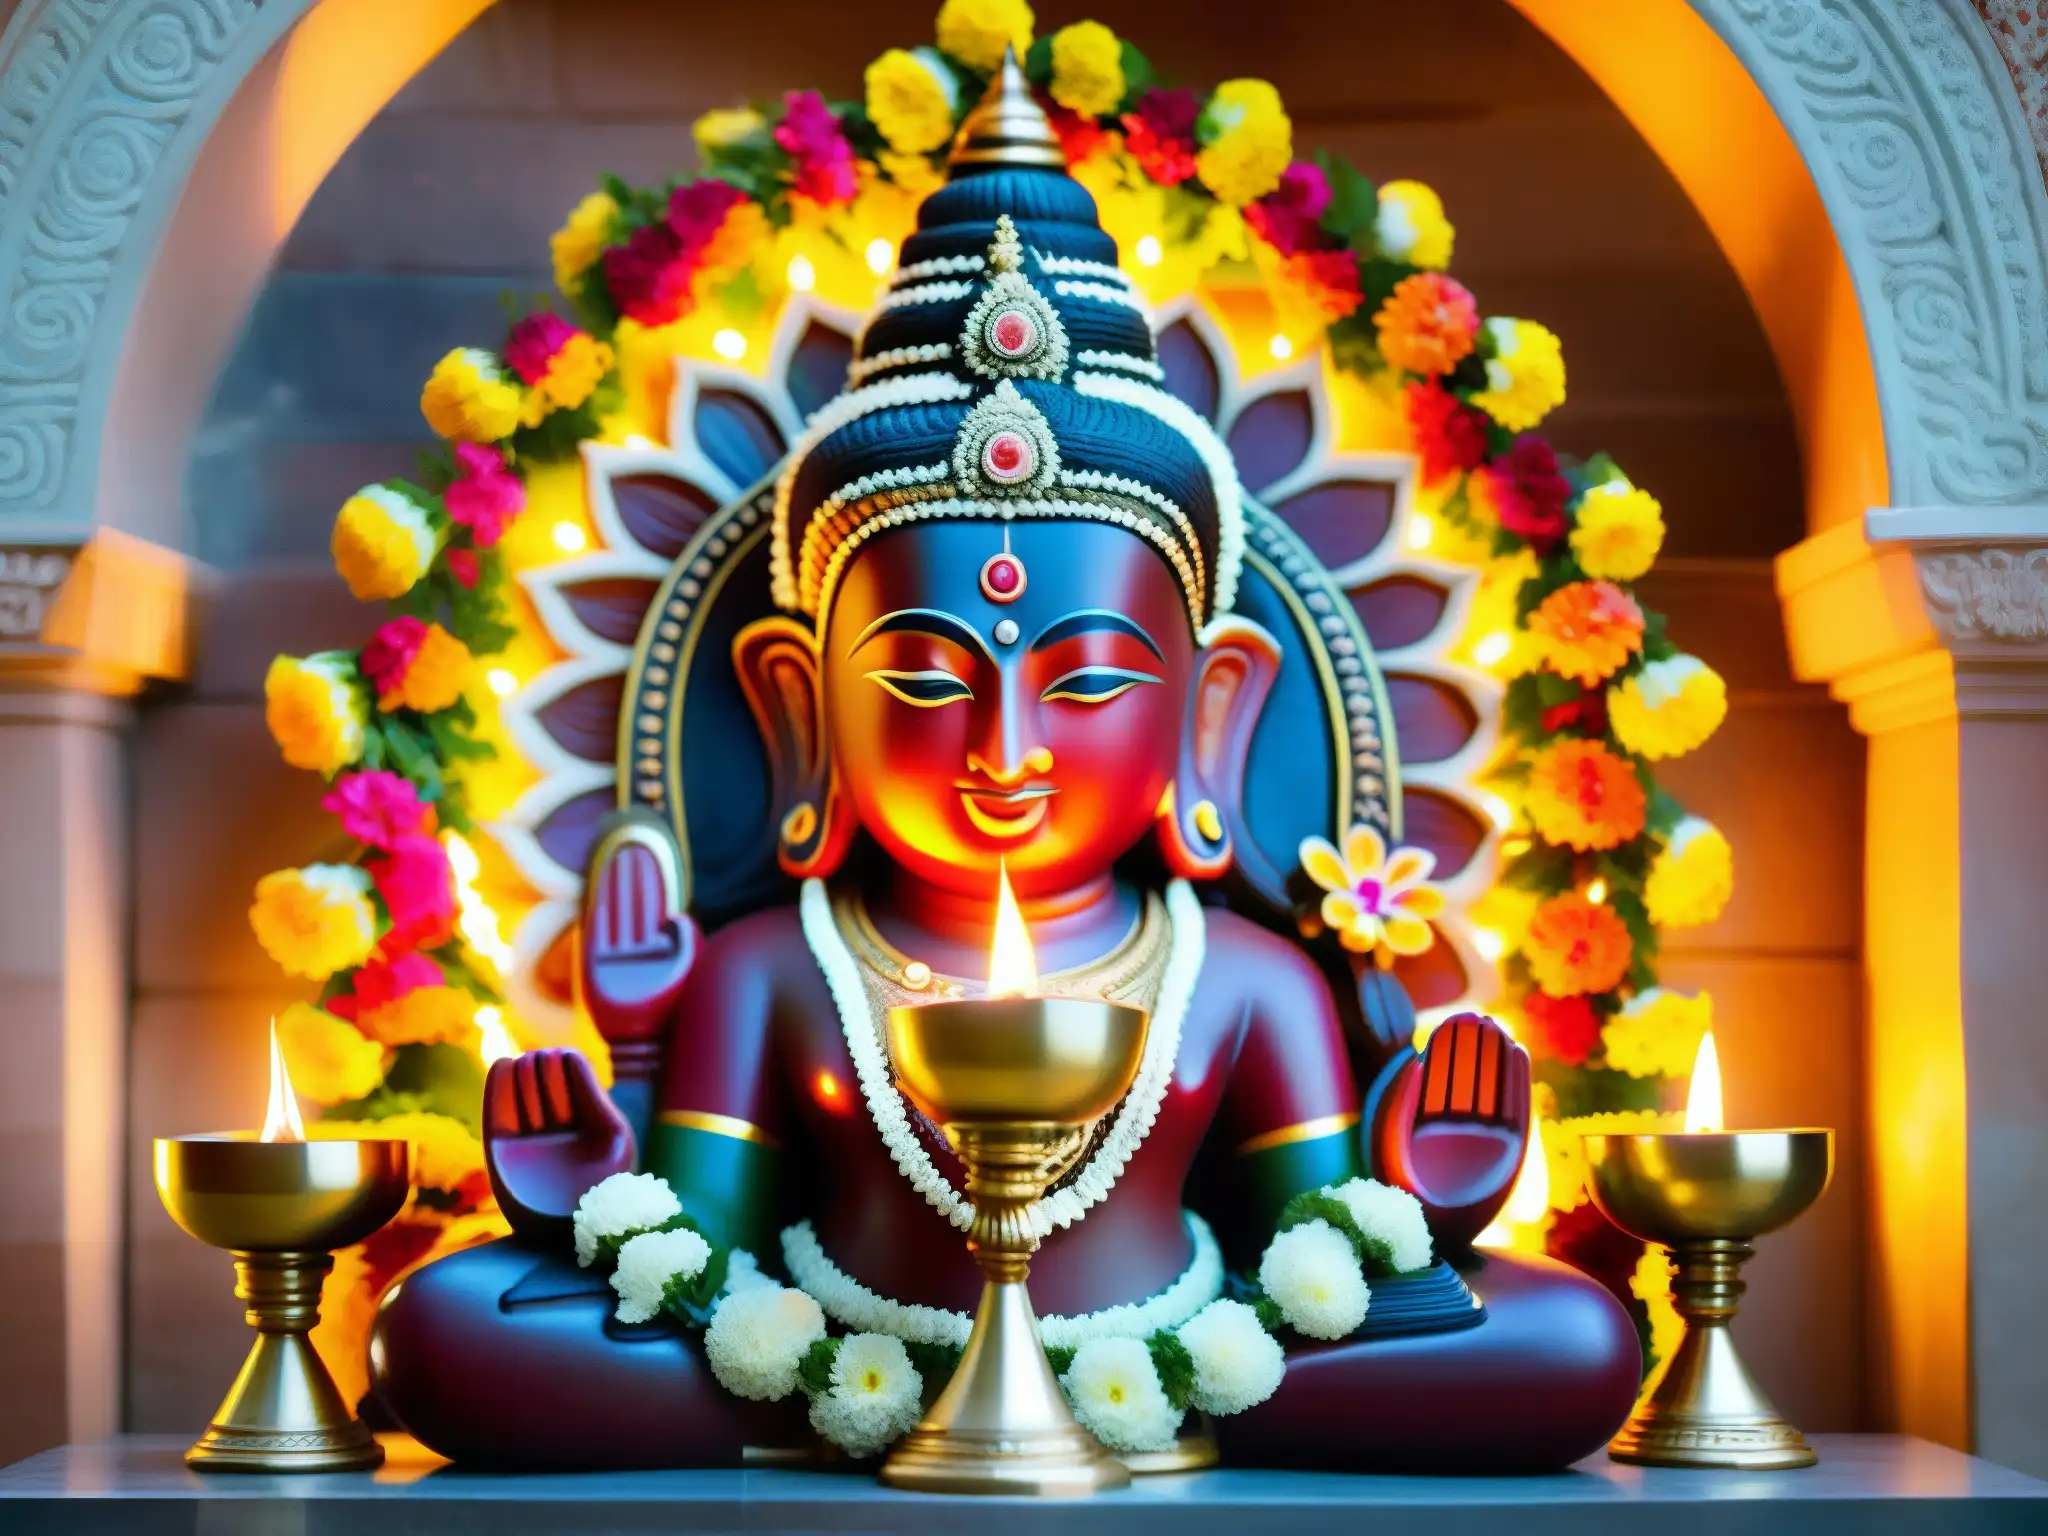 Escultura detallada de una deidad hindú iluminada por lámparas en un templo en India, con apariciones de deidades hinduismo